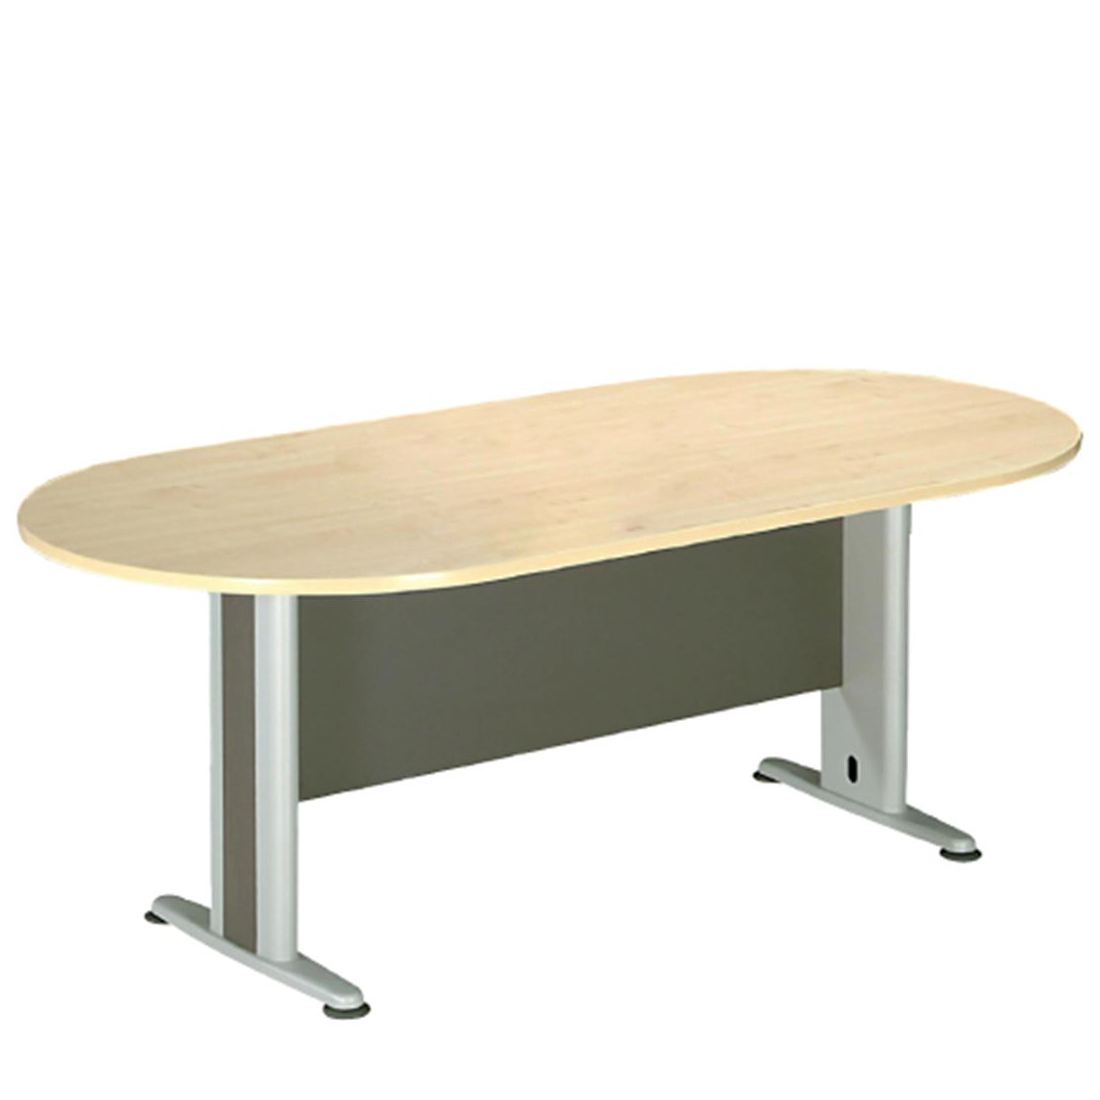 Τραπέζι Συνεδρίου Οβάλ Σκούρο Γκρι/Φυσικό Μέταλλο/Μελαμίνη 180x90x75cm